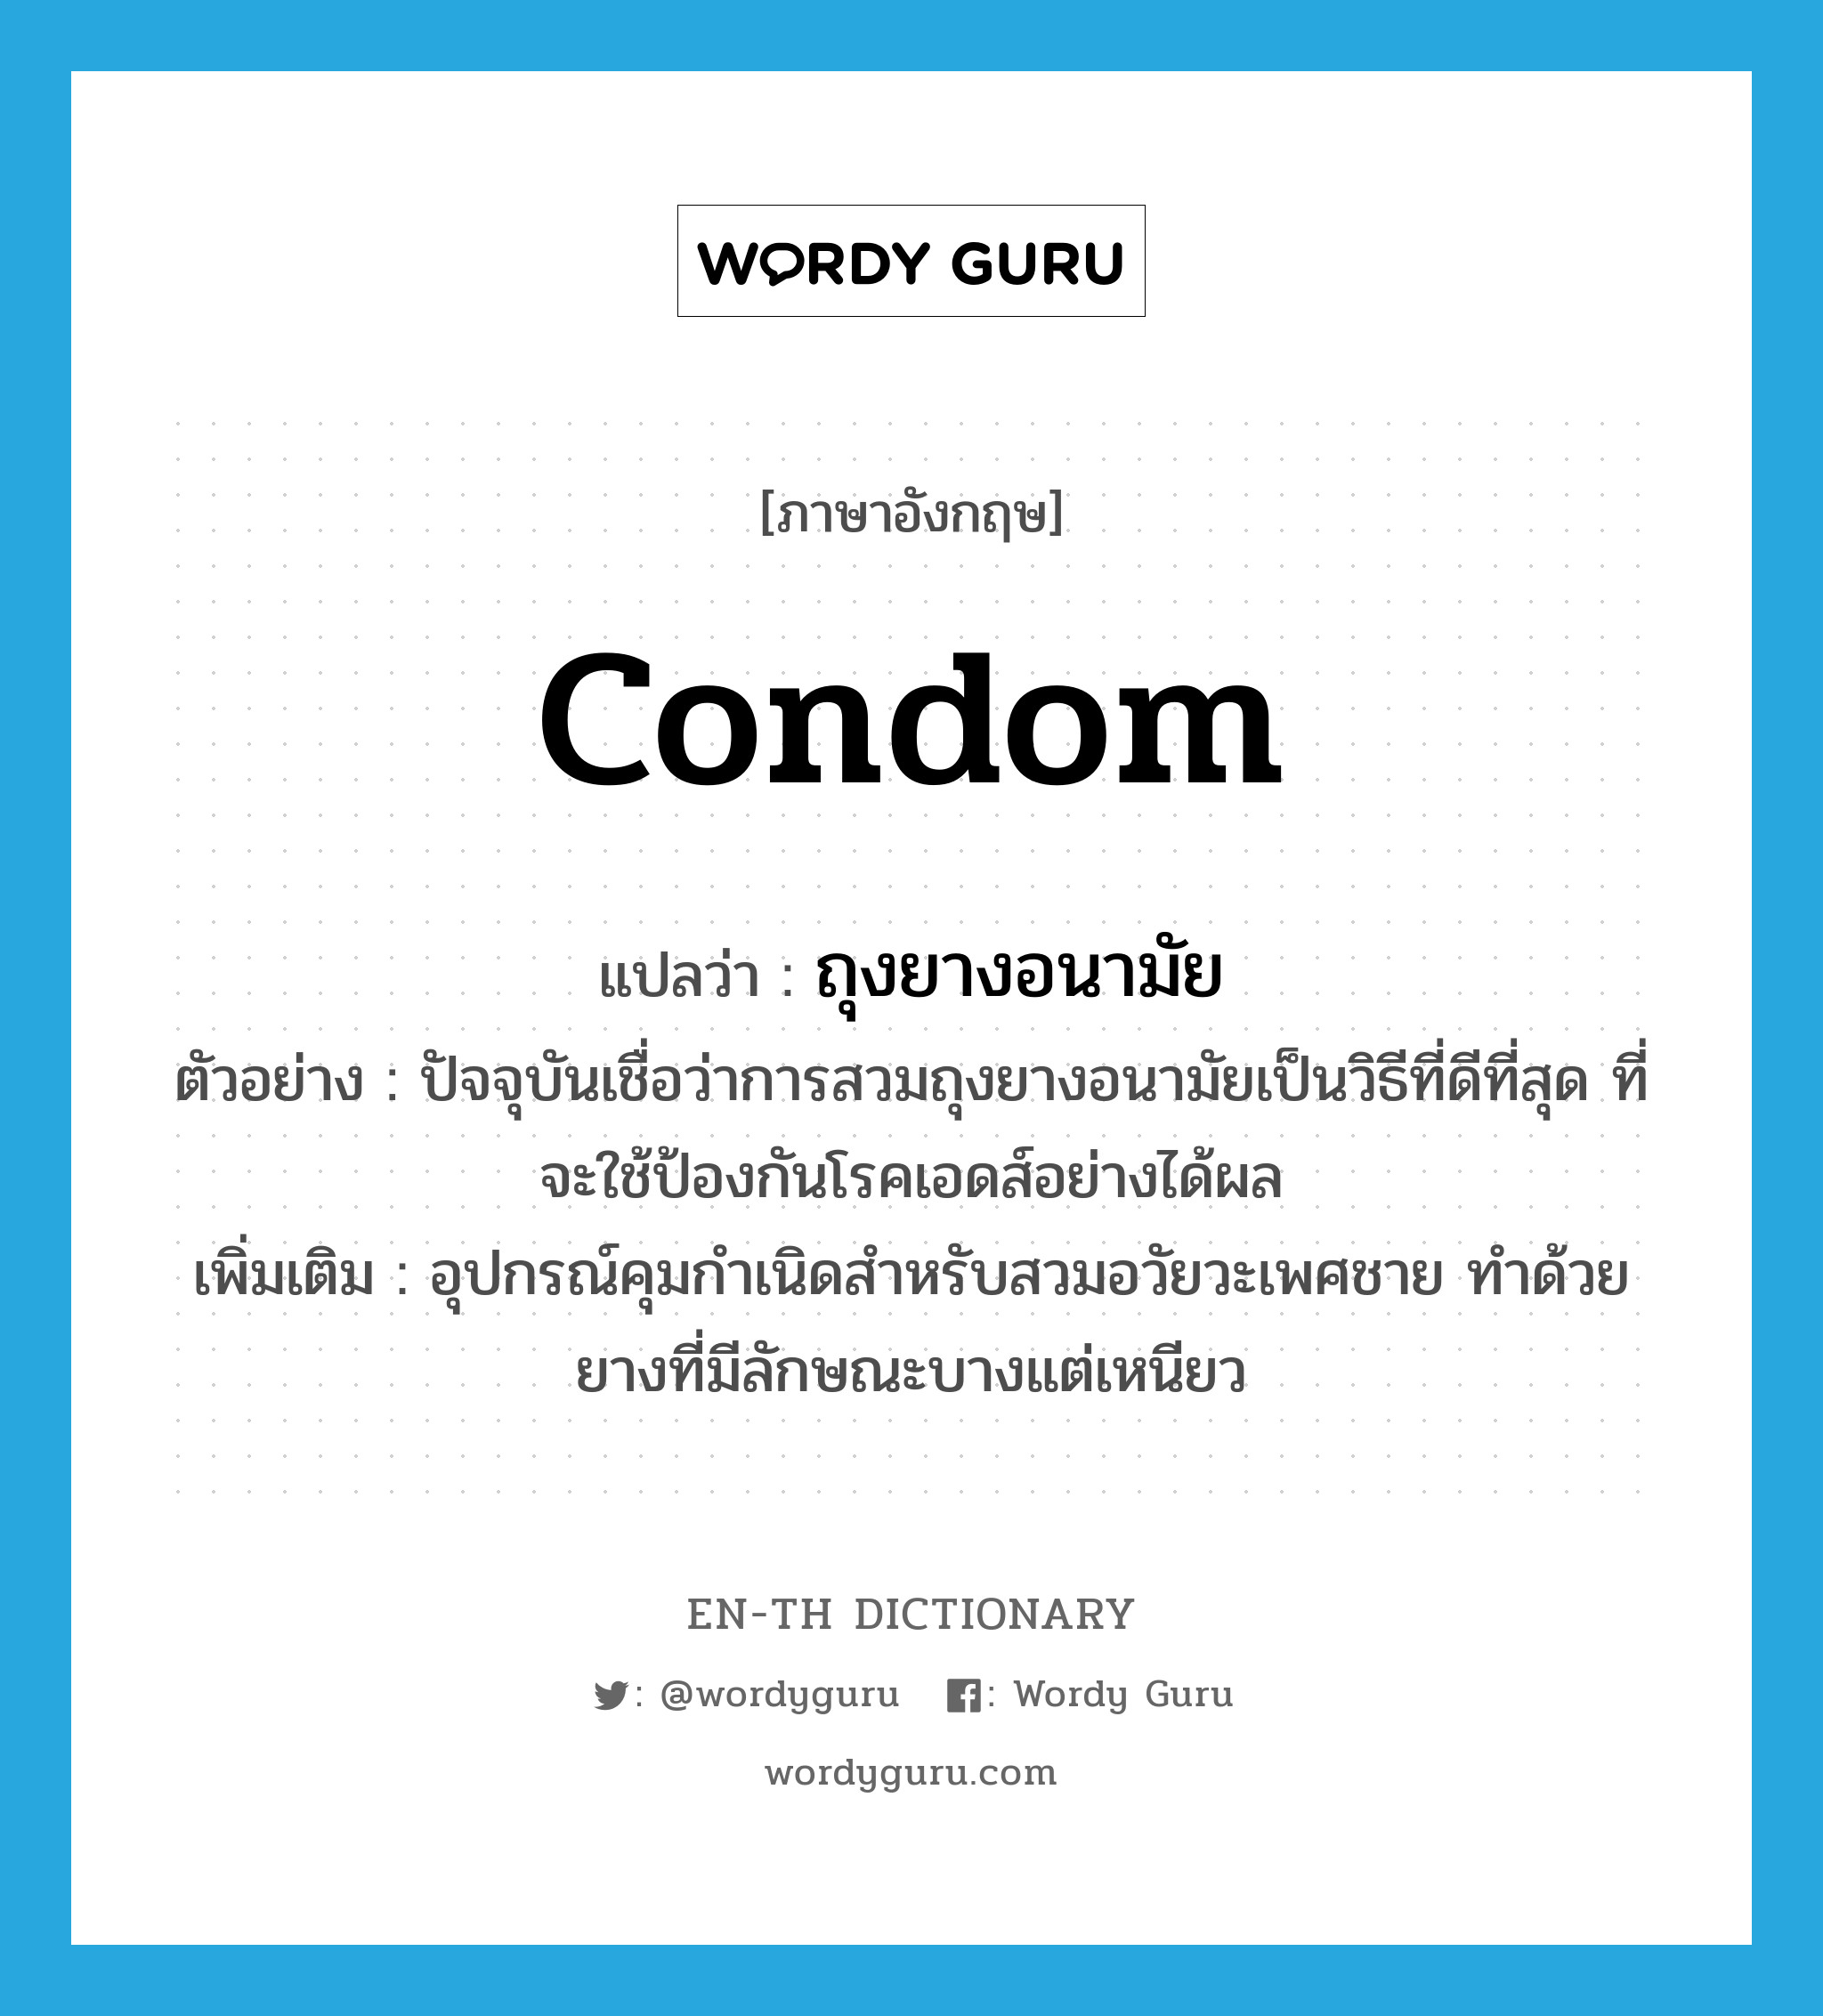 ถุงยางอนามัย ภาษาอังกฤษ?, คำศัพท์ภาษาอังกฤษ ถุงยางอนามัย แปลว่า condom ประเภท N ตัวอย่าง ปัจจุบันเชื่อว่าการสวมถุงยางอนามัยเป็นวิธีที่ดีที่สุด ที่จะใช้ป้องกันโรคเอดส์อย่างได้ผล เพิ่มเติม อุปกรณ์คุมกำเนิดสำหรับสวมอวัยวะเพศชาย ทำด้วยยางที่มีลักษณะบางแต่เหนียว หมวด N